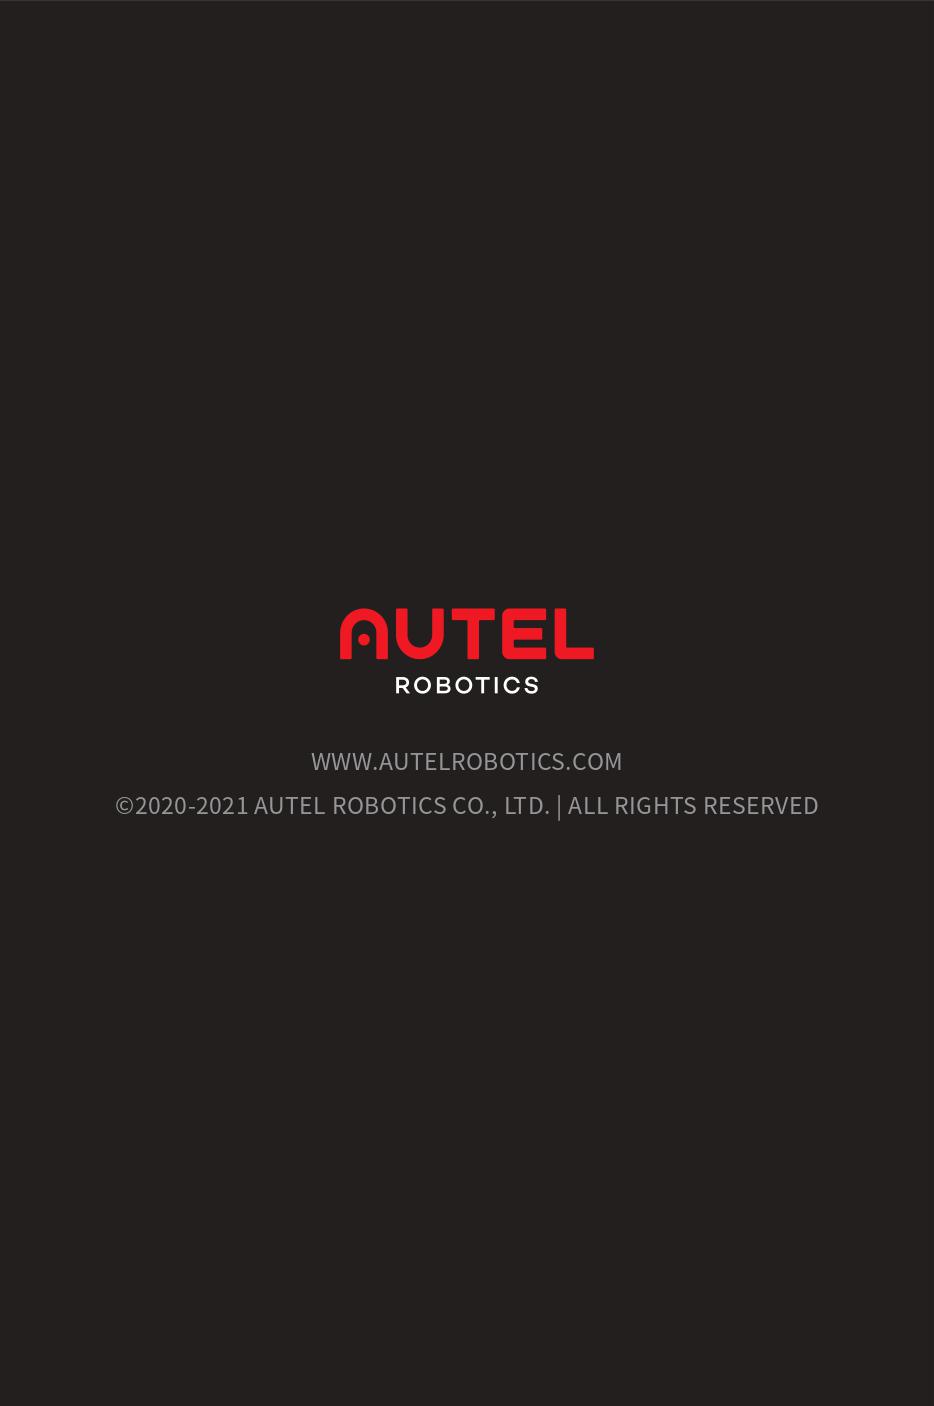 오텔 에보2 엔터프라이즈 퀵 스타트 가이드;Autel EVO2 Enterprise Quick Start Guide; 덕유항공은 오텔드론 브랜드만 판매하는 오텔드론총판입니다.